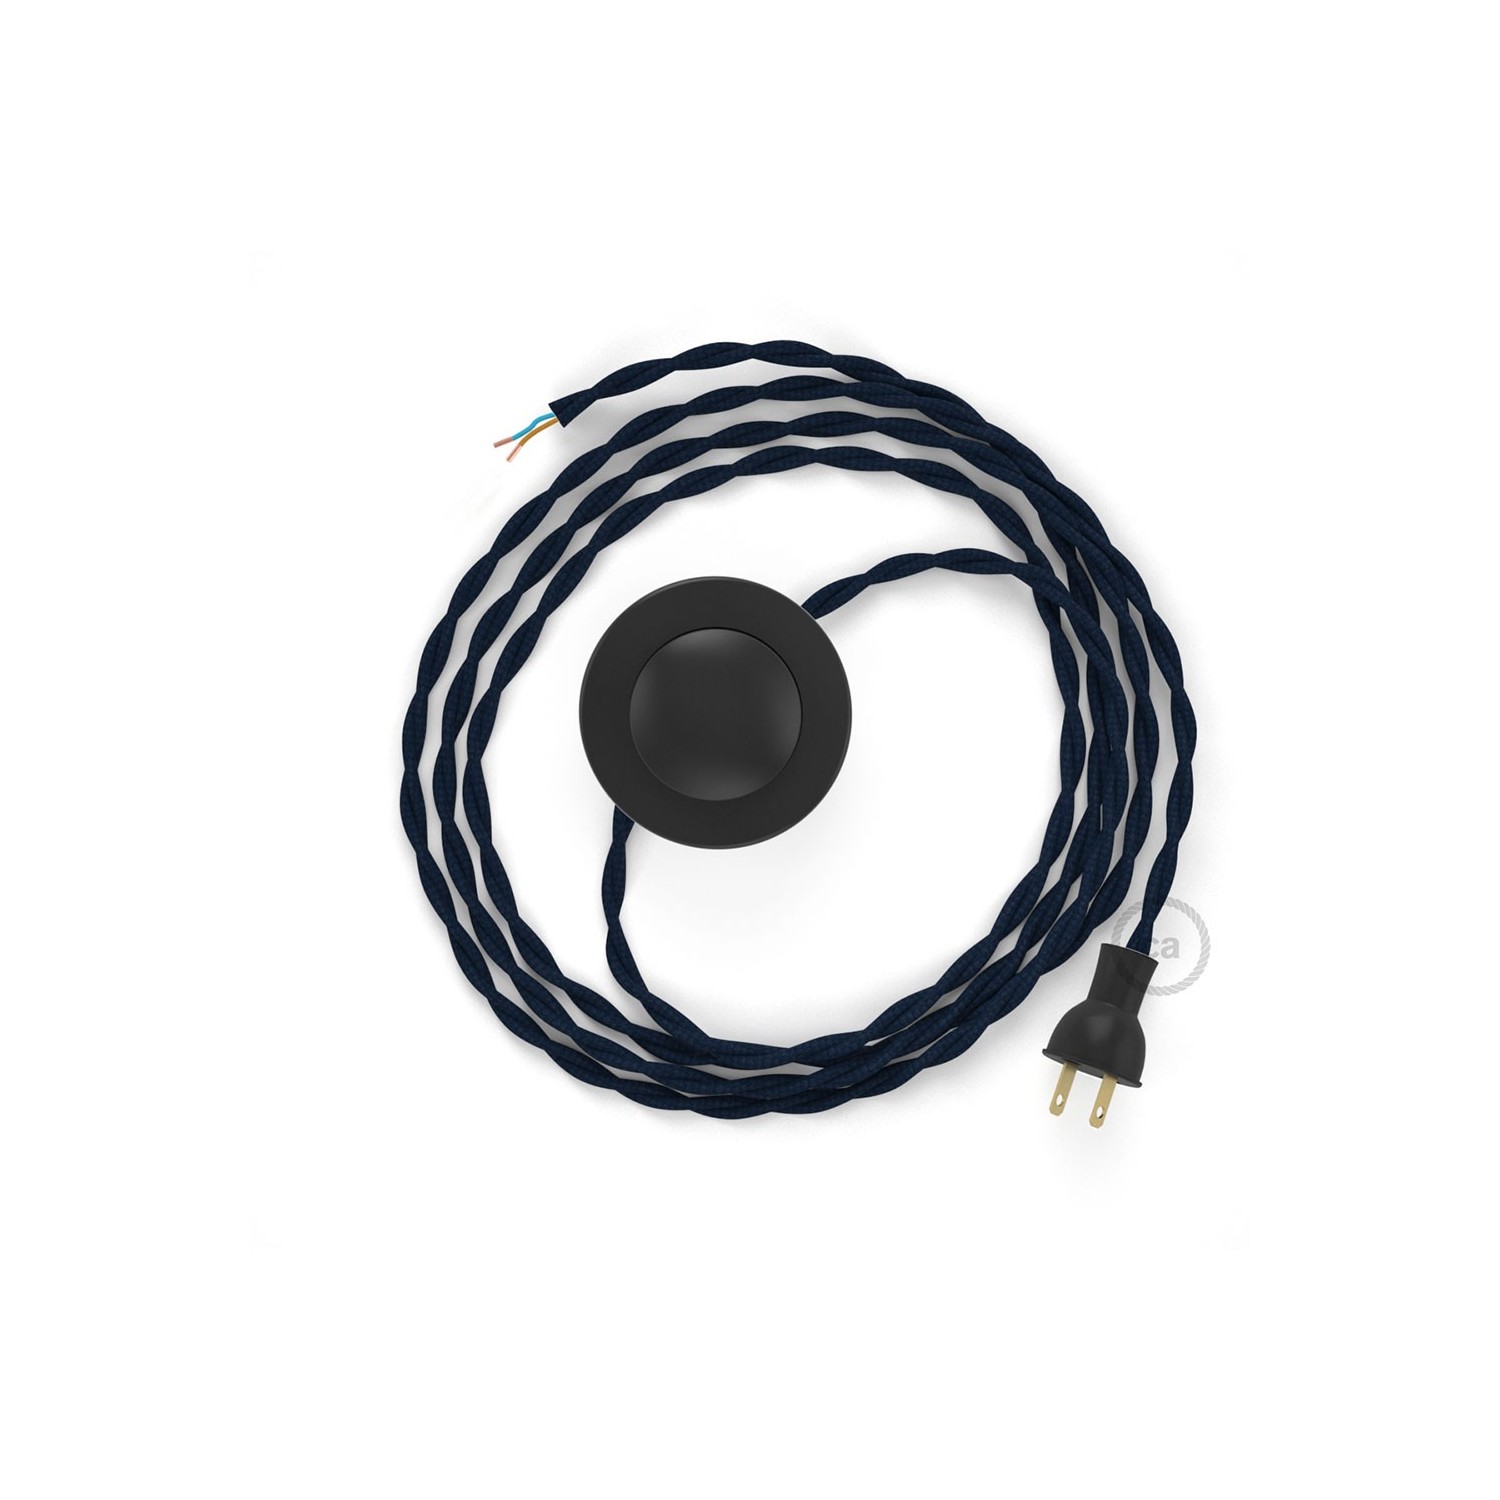 Cableado para lámpara de piso, cable TM20 Rayón Azul Oscuro 3 m. Elige tu el color de la clavija y del interruptor!